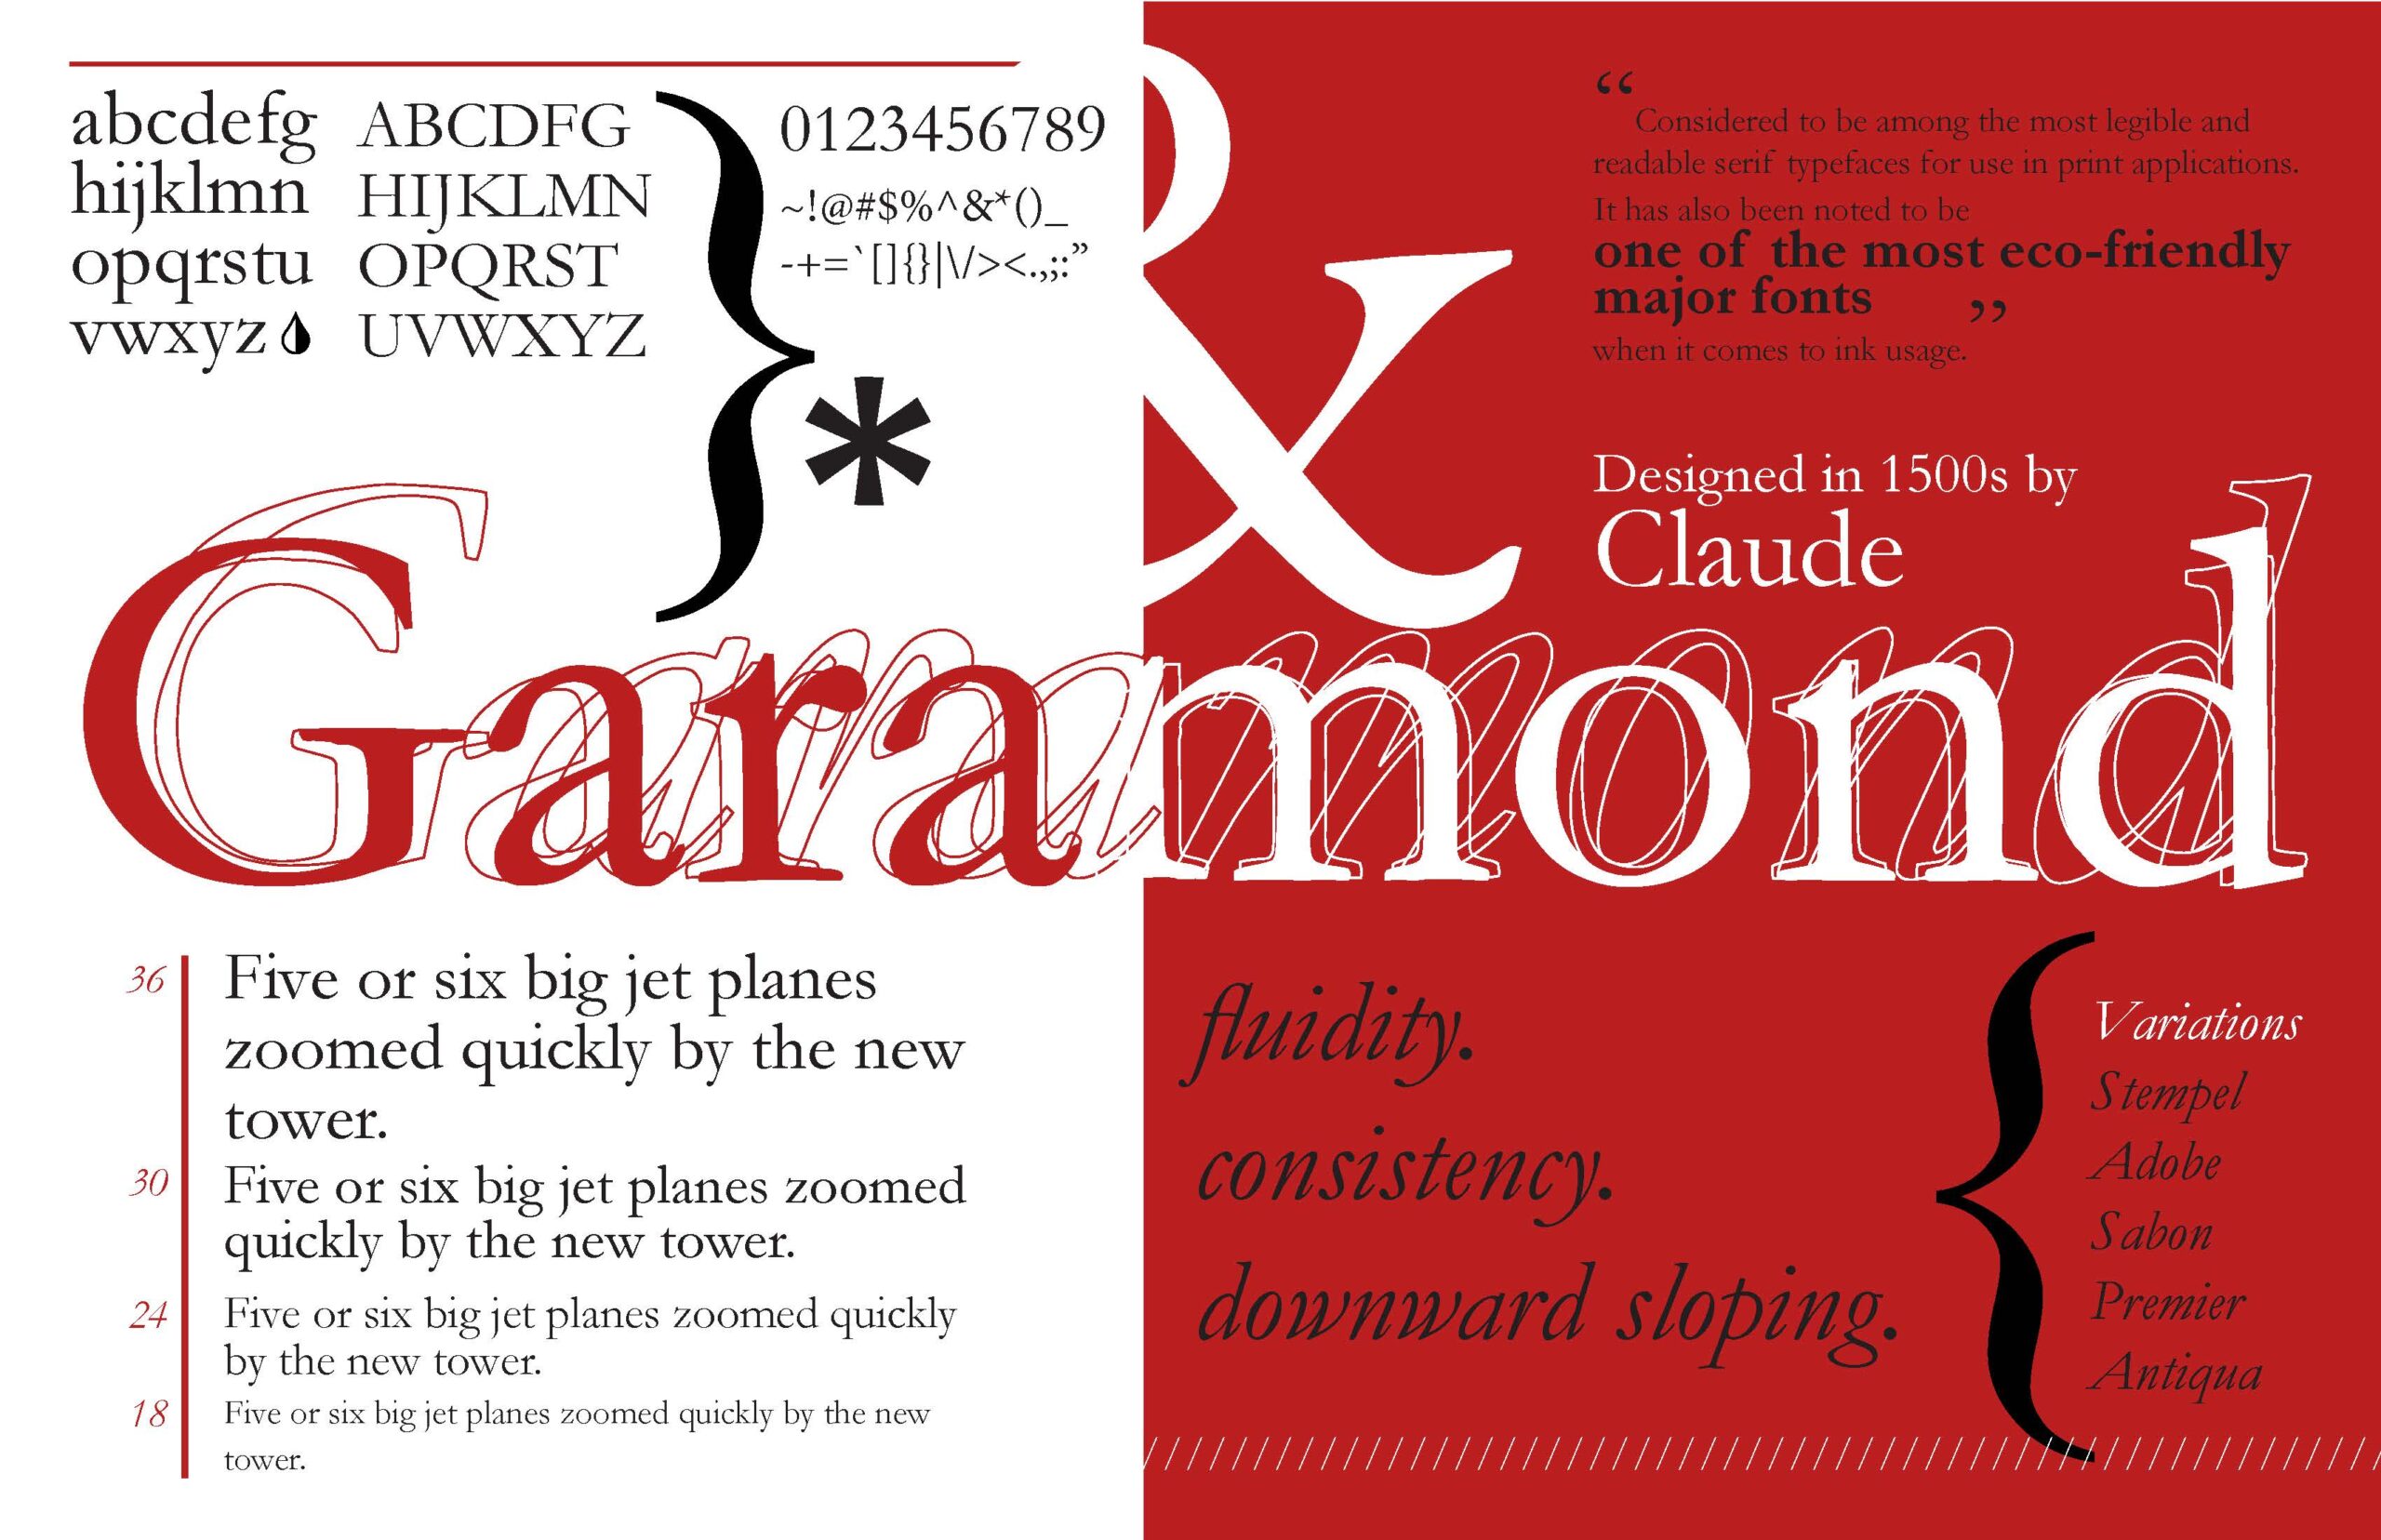 Historia Detallada de la Tipografía Garamond: Elegancia Clásica en el Diseño Tipográfico